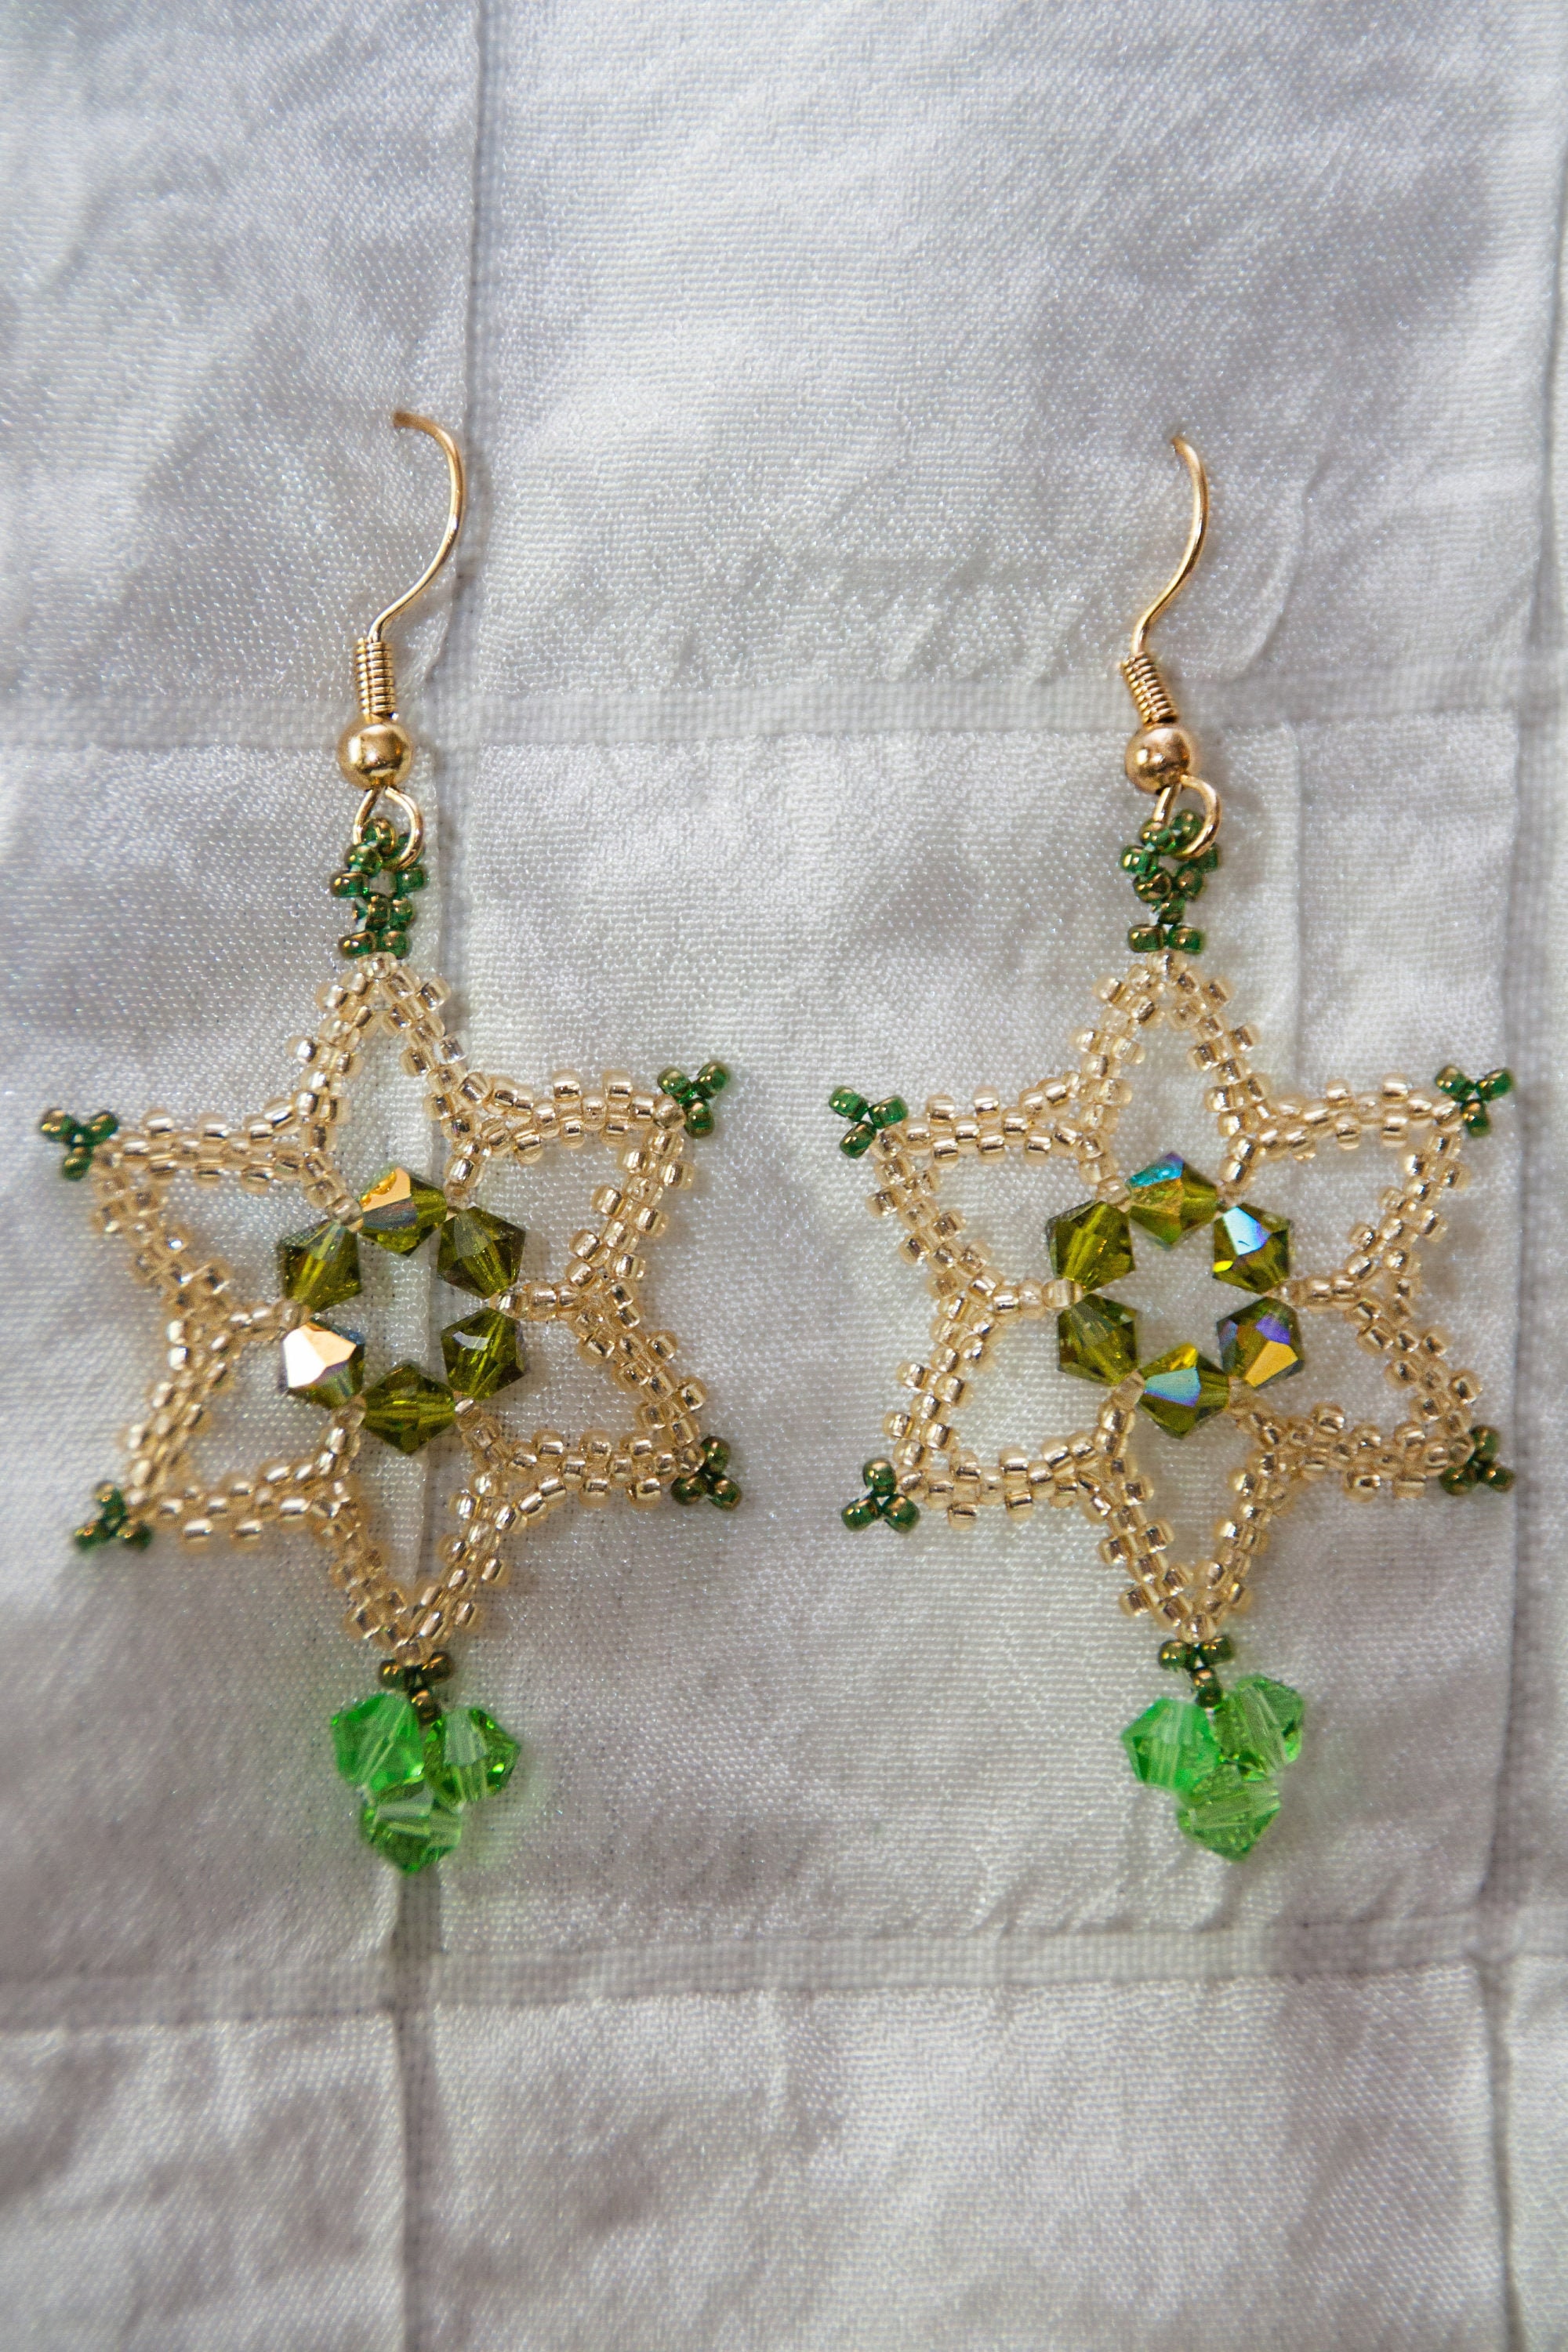 Lace earrings with brass pendantfan shape 2 colors